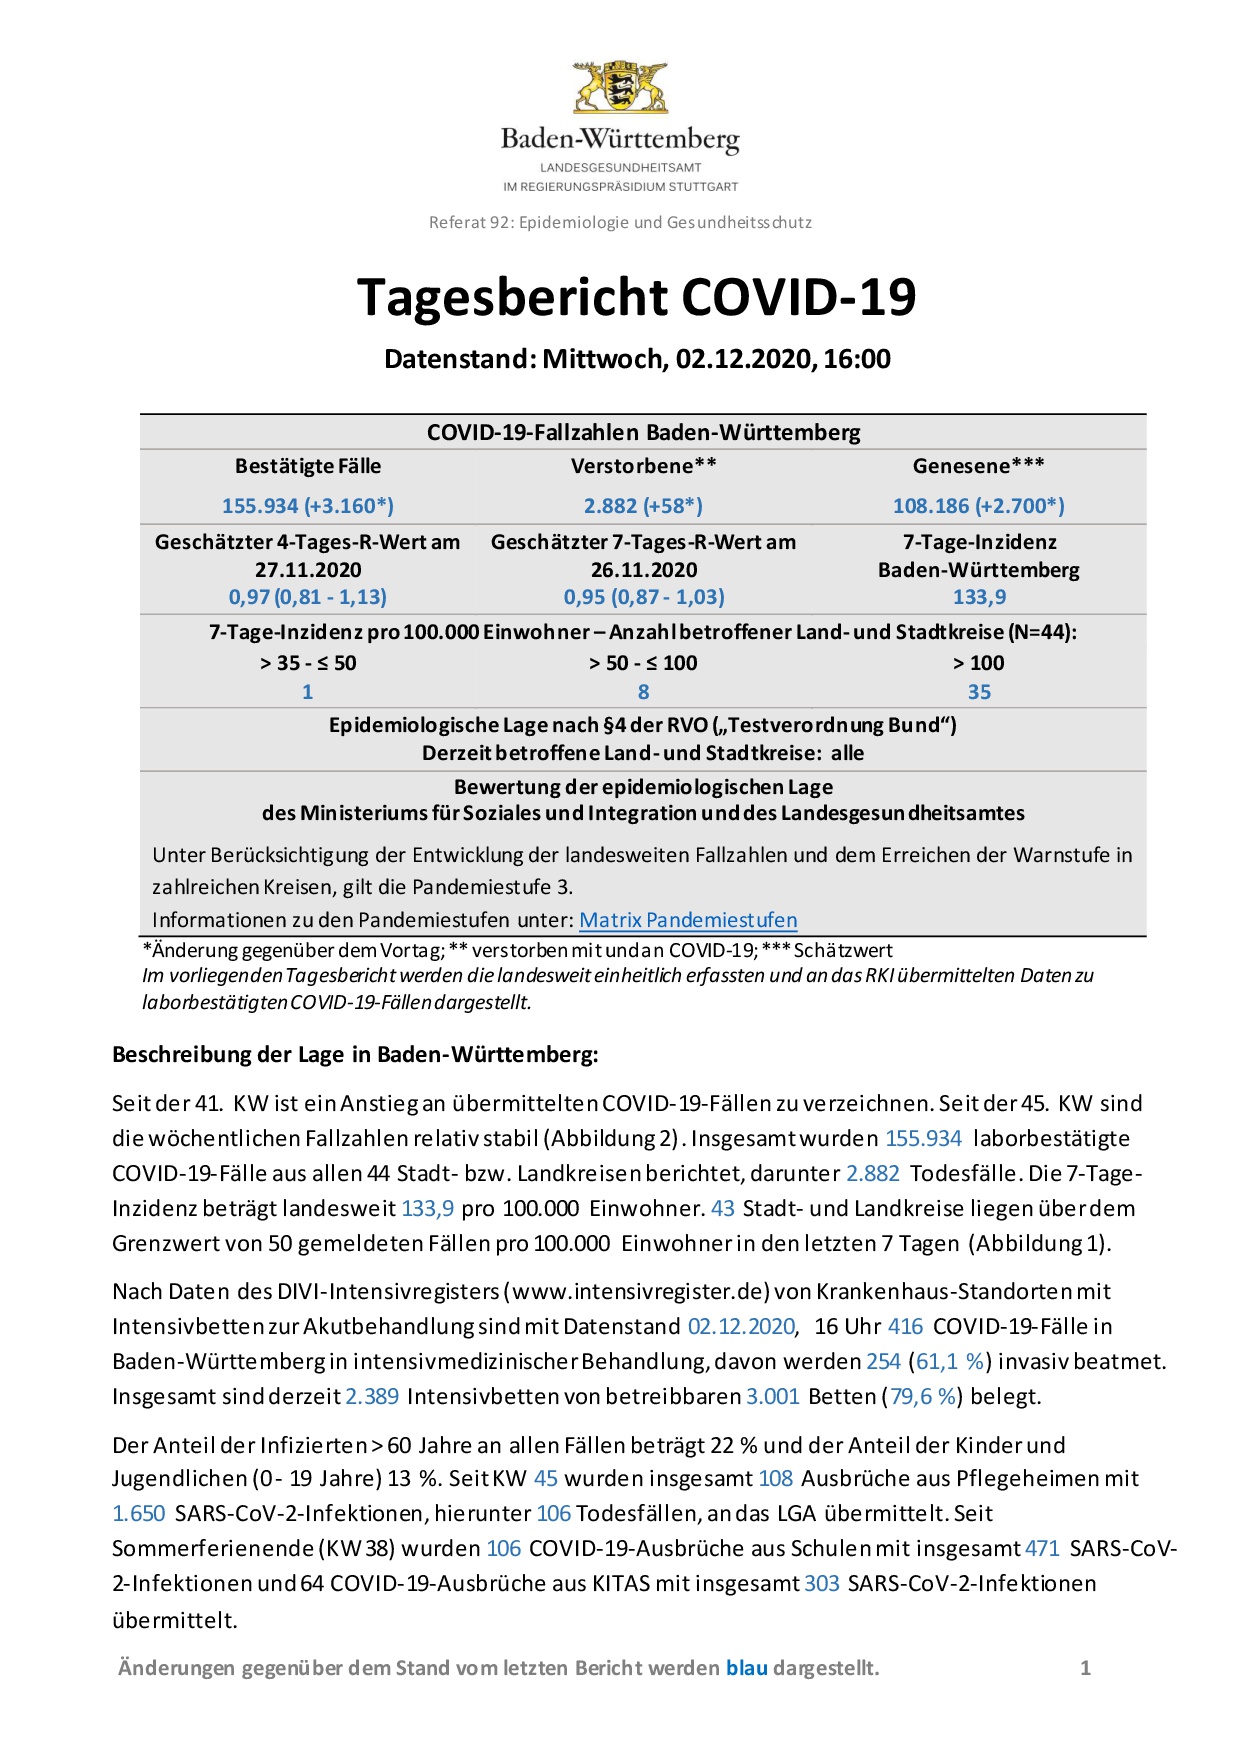 COVID-19 Tagesbericht (02.12.2020) des Landesgesundheitsamts Baden-Württemberg – (ausführlicher)